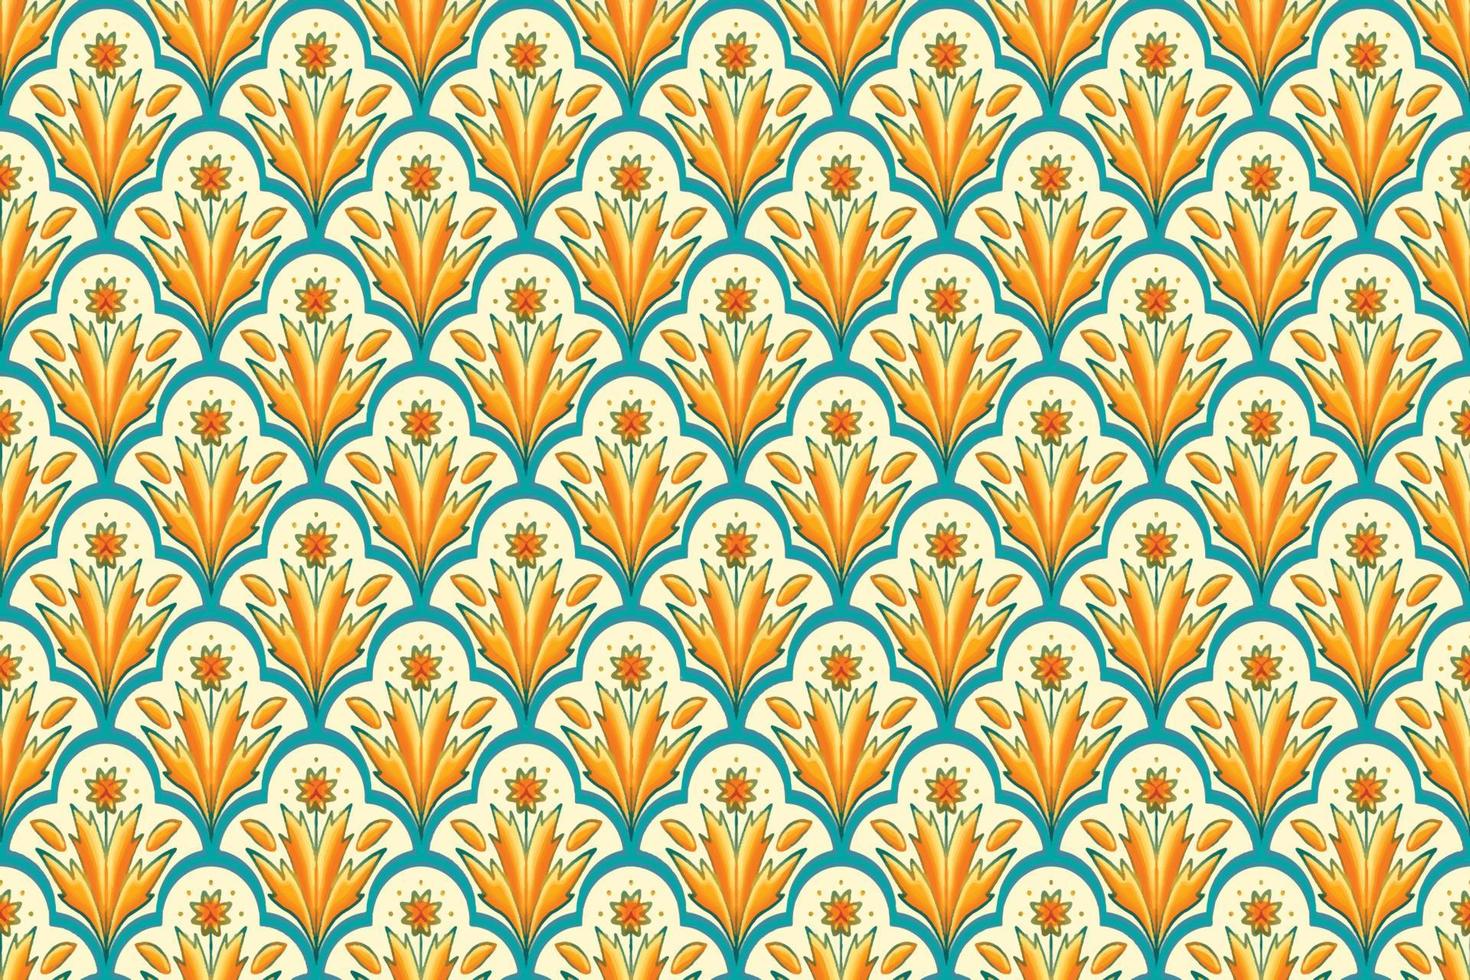 amarelo, verde-azulado sobre marfim. design tradicional de padrão oriental étnico geométrico para plano de fundo, tapete, papel de parede, roupas, embrulho, batik, tecido, estilo de bordado de ilustração vetorial vetor